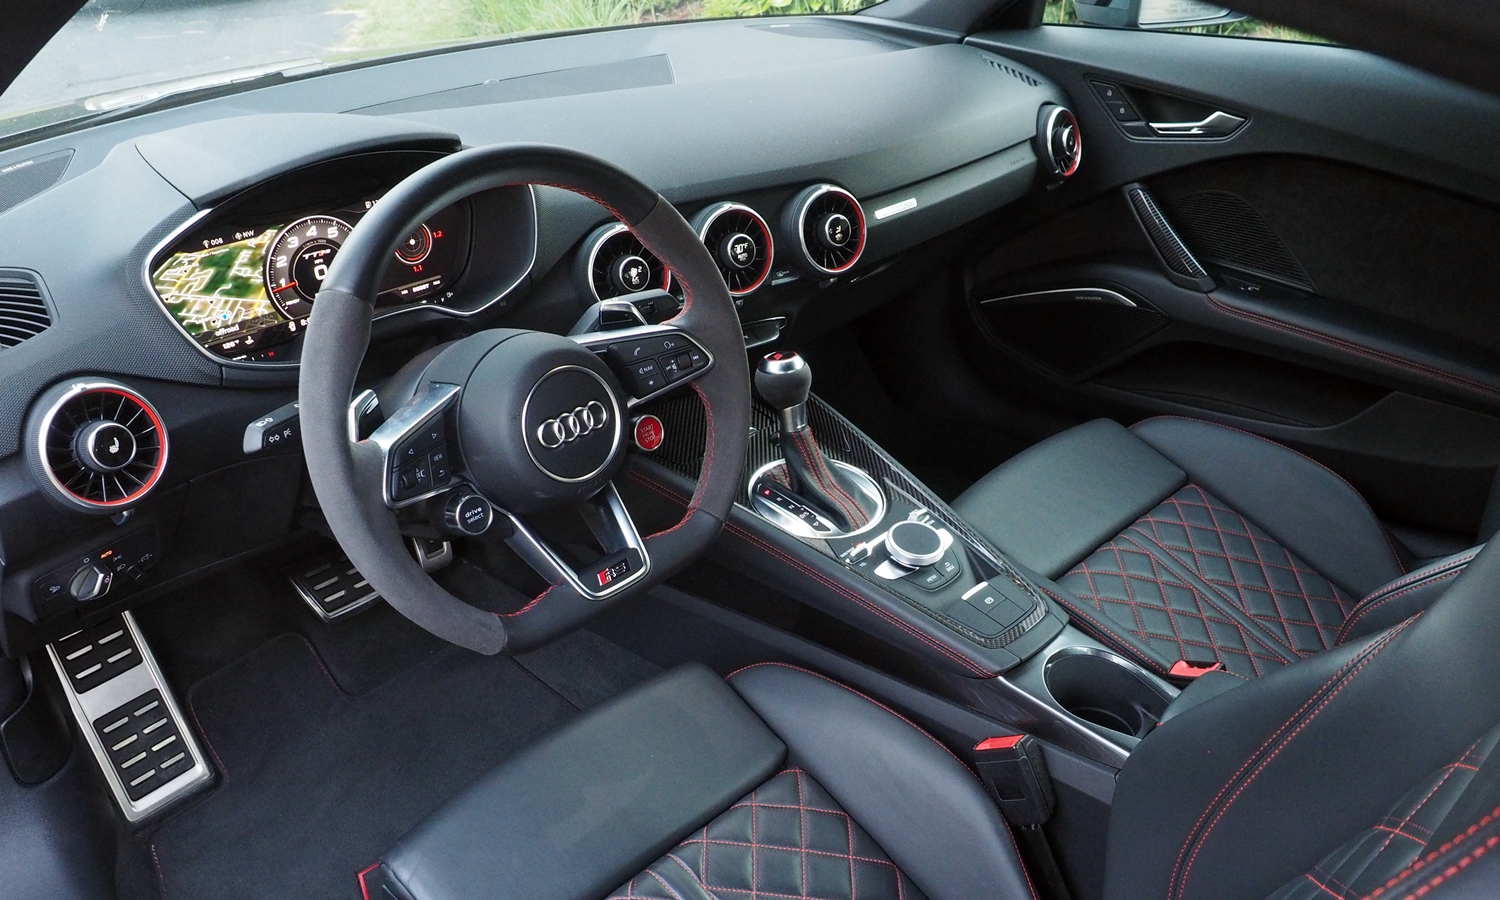 Audi TT Photos: Audi TT RS interior